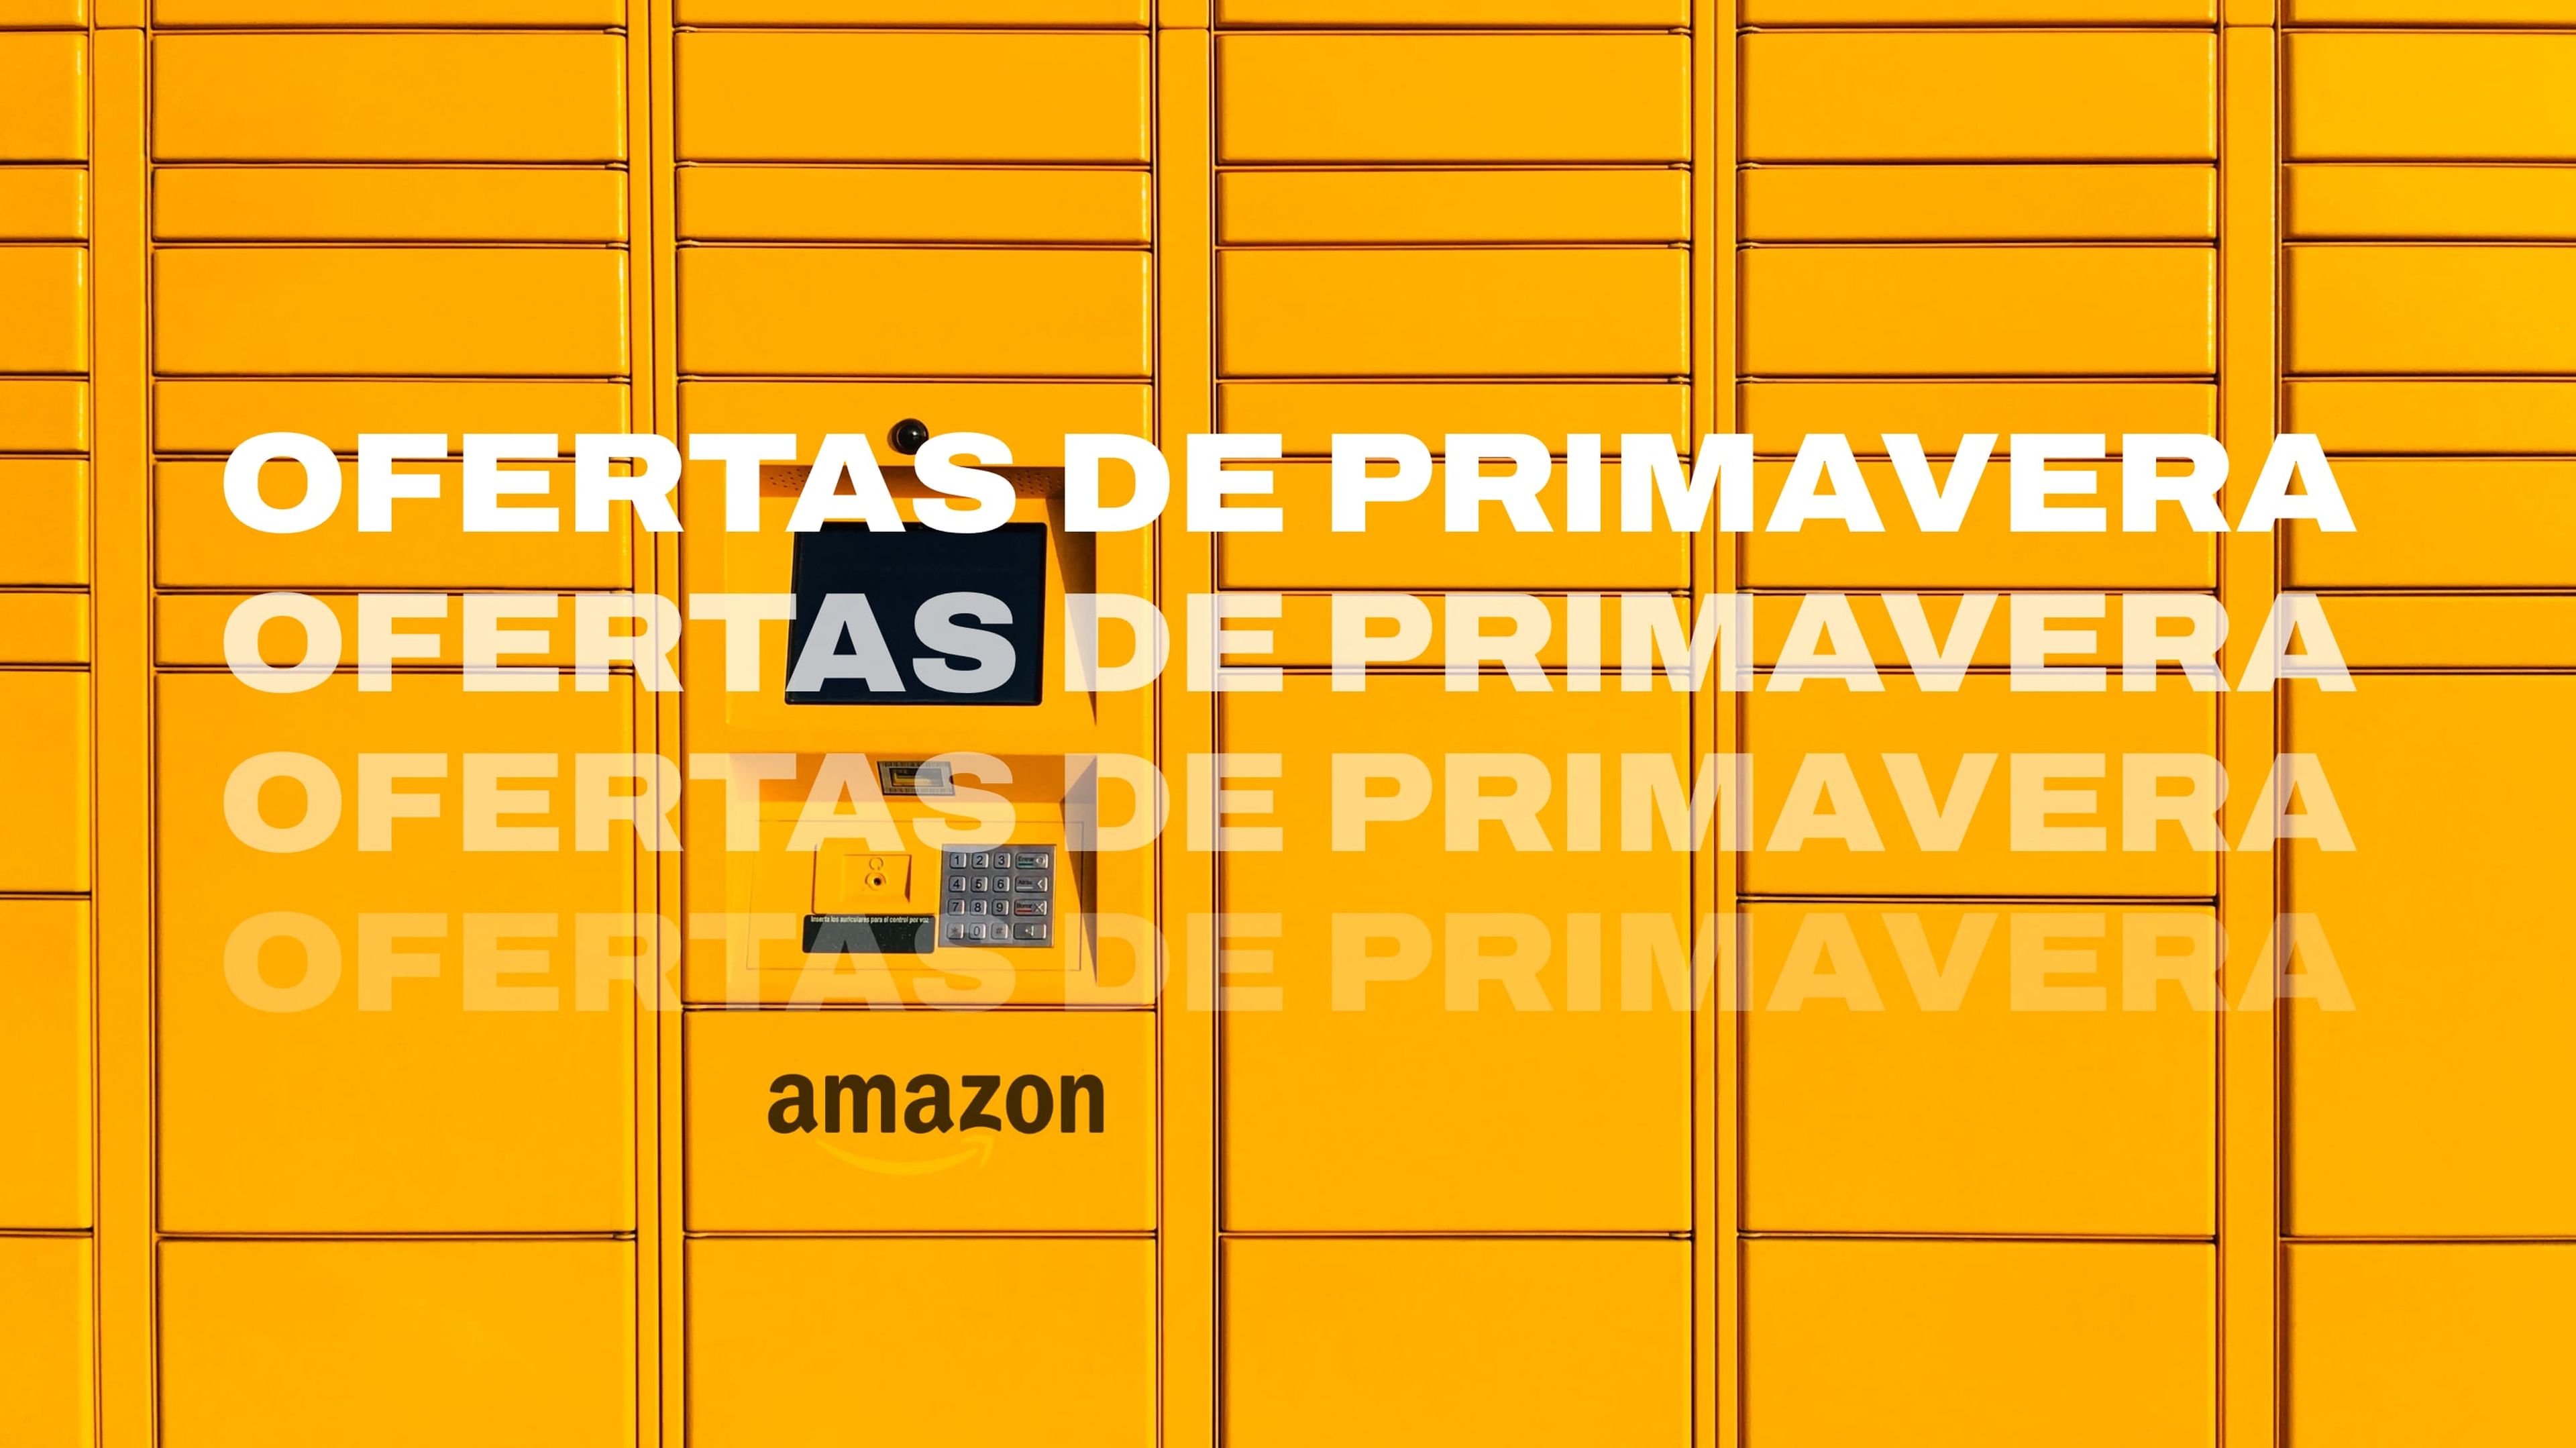 Buzón de paquetes de Amazon con "Ofertas de Primavera" superpuesto